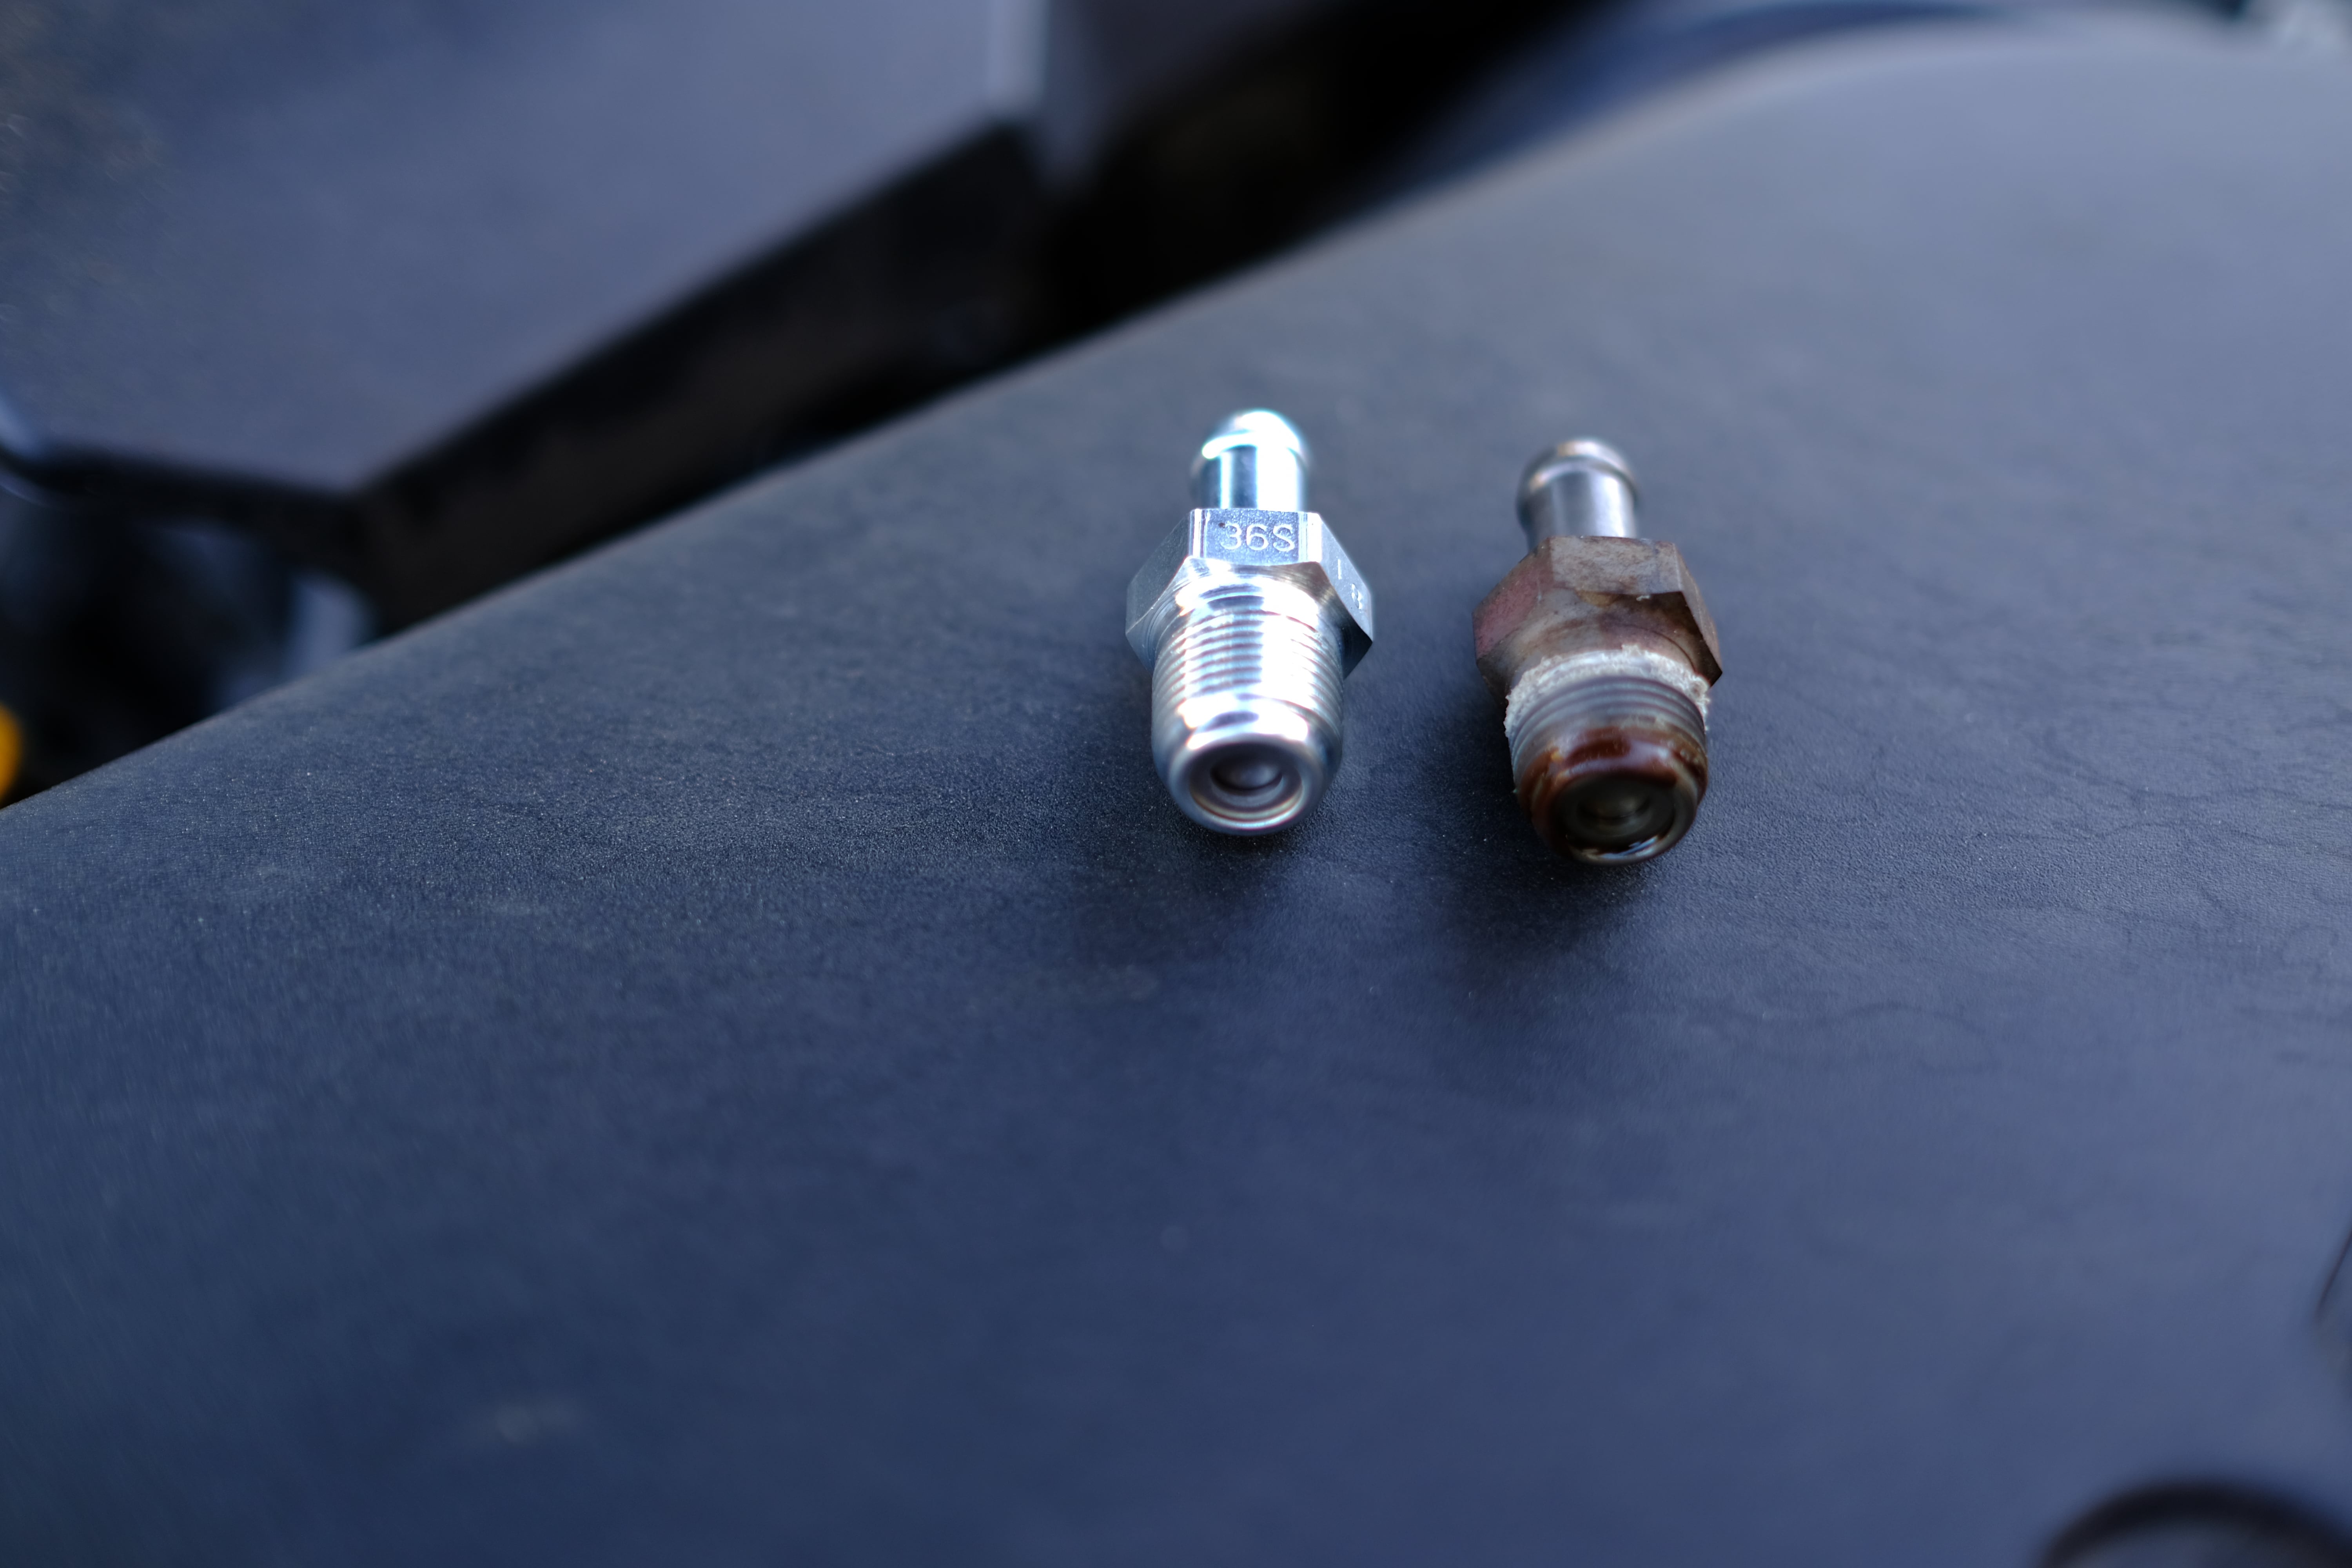 Old PCV valve vs New